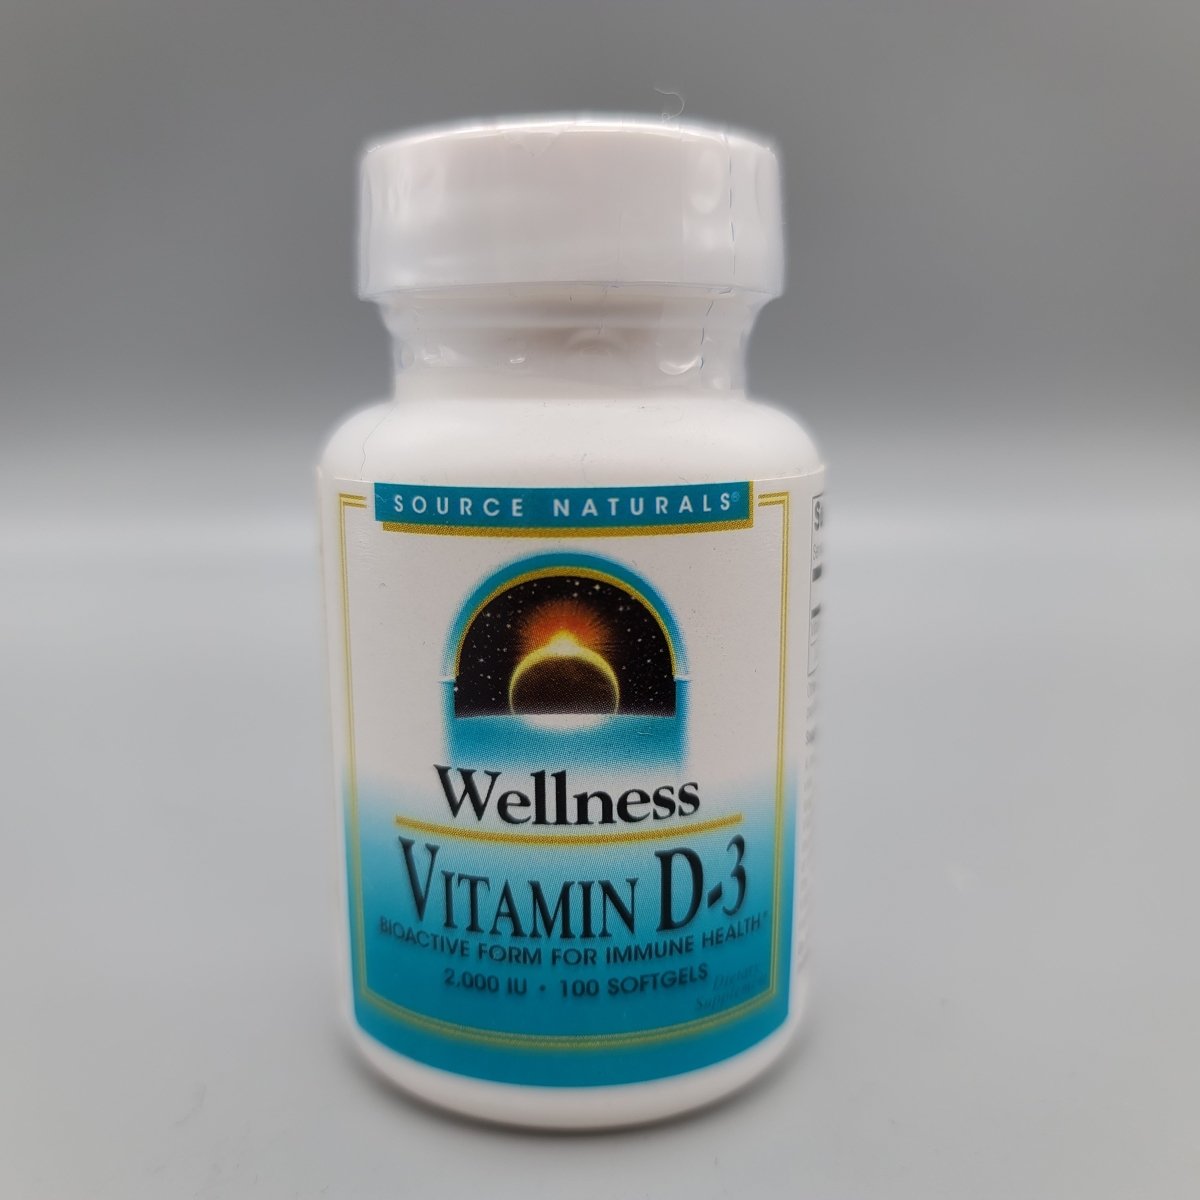 Wellness Vitamin D-3 - 2000 IU - 100 SoftGels - Source Naturals